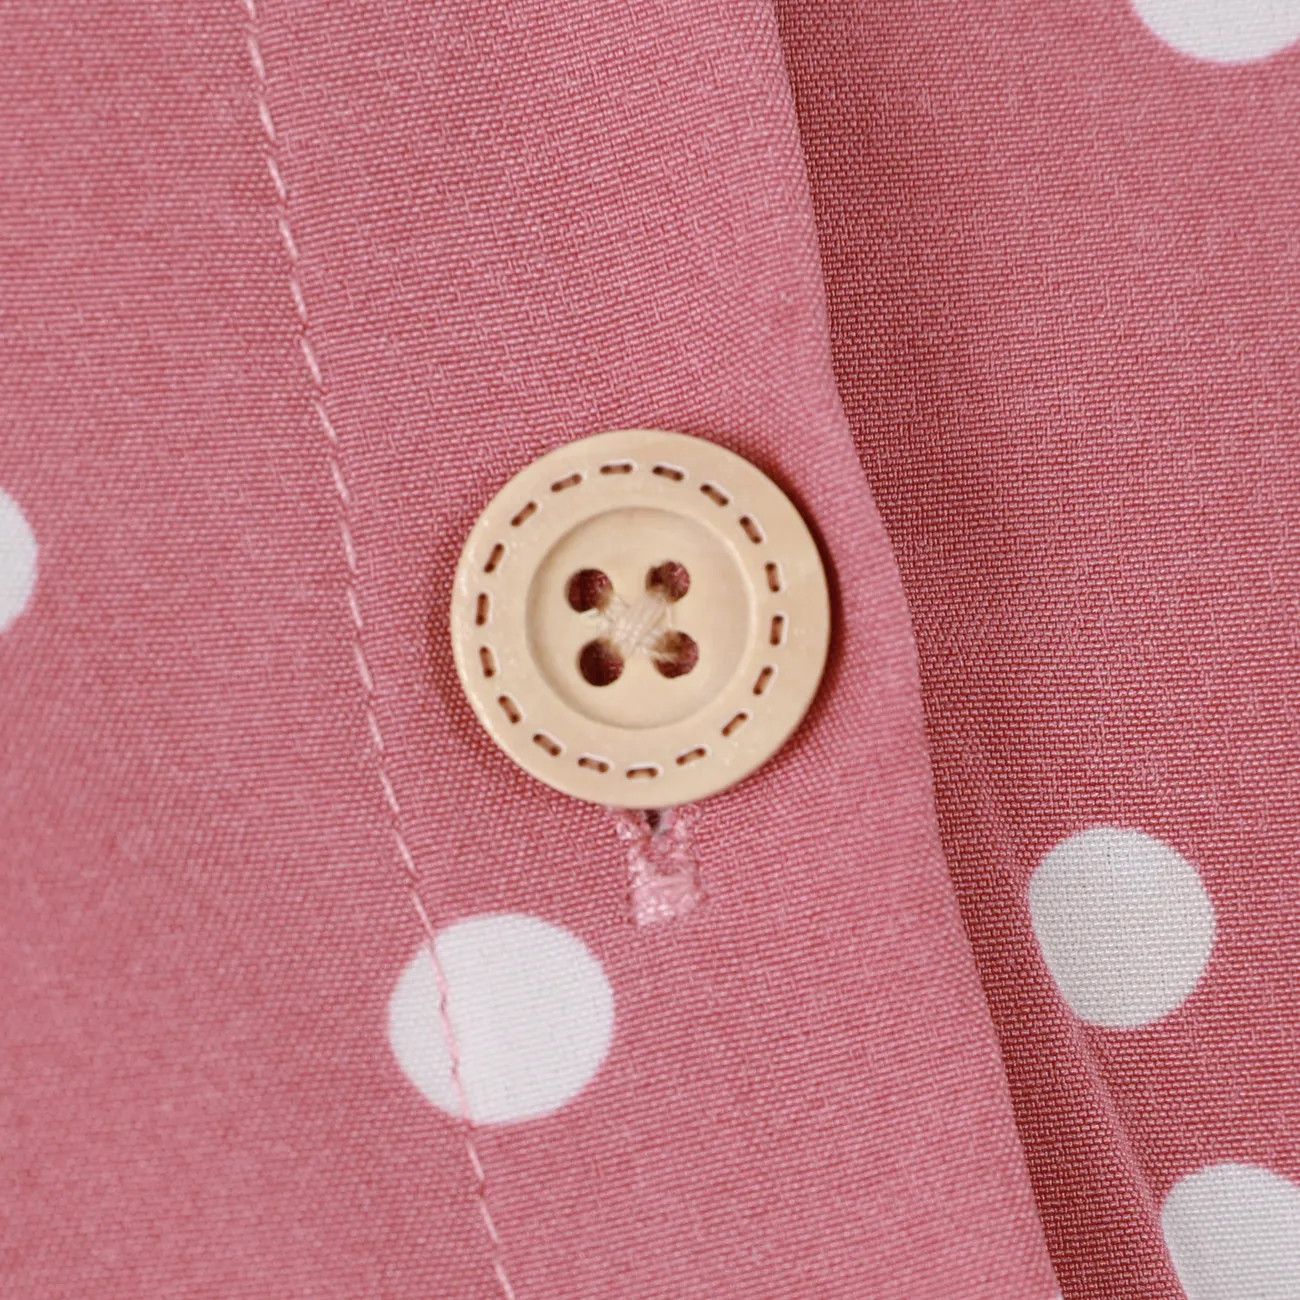 Kid Girl Polka dots Button Design Flutter-sleeve Belted Dress Redbeanpaste big image 1